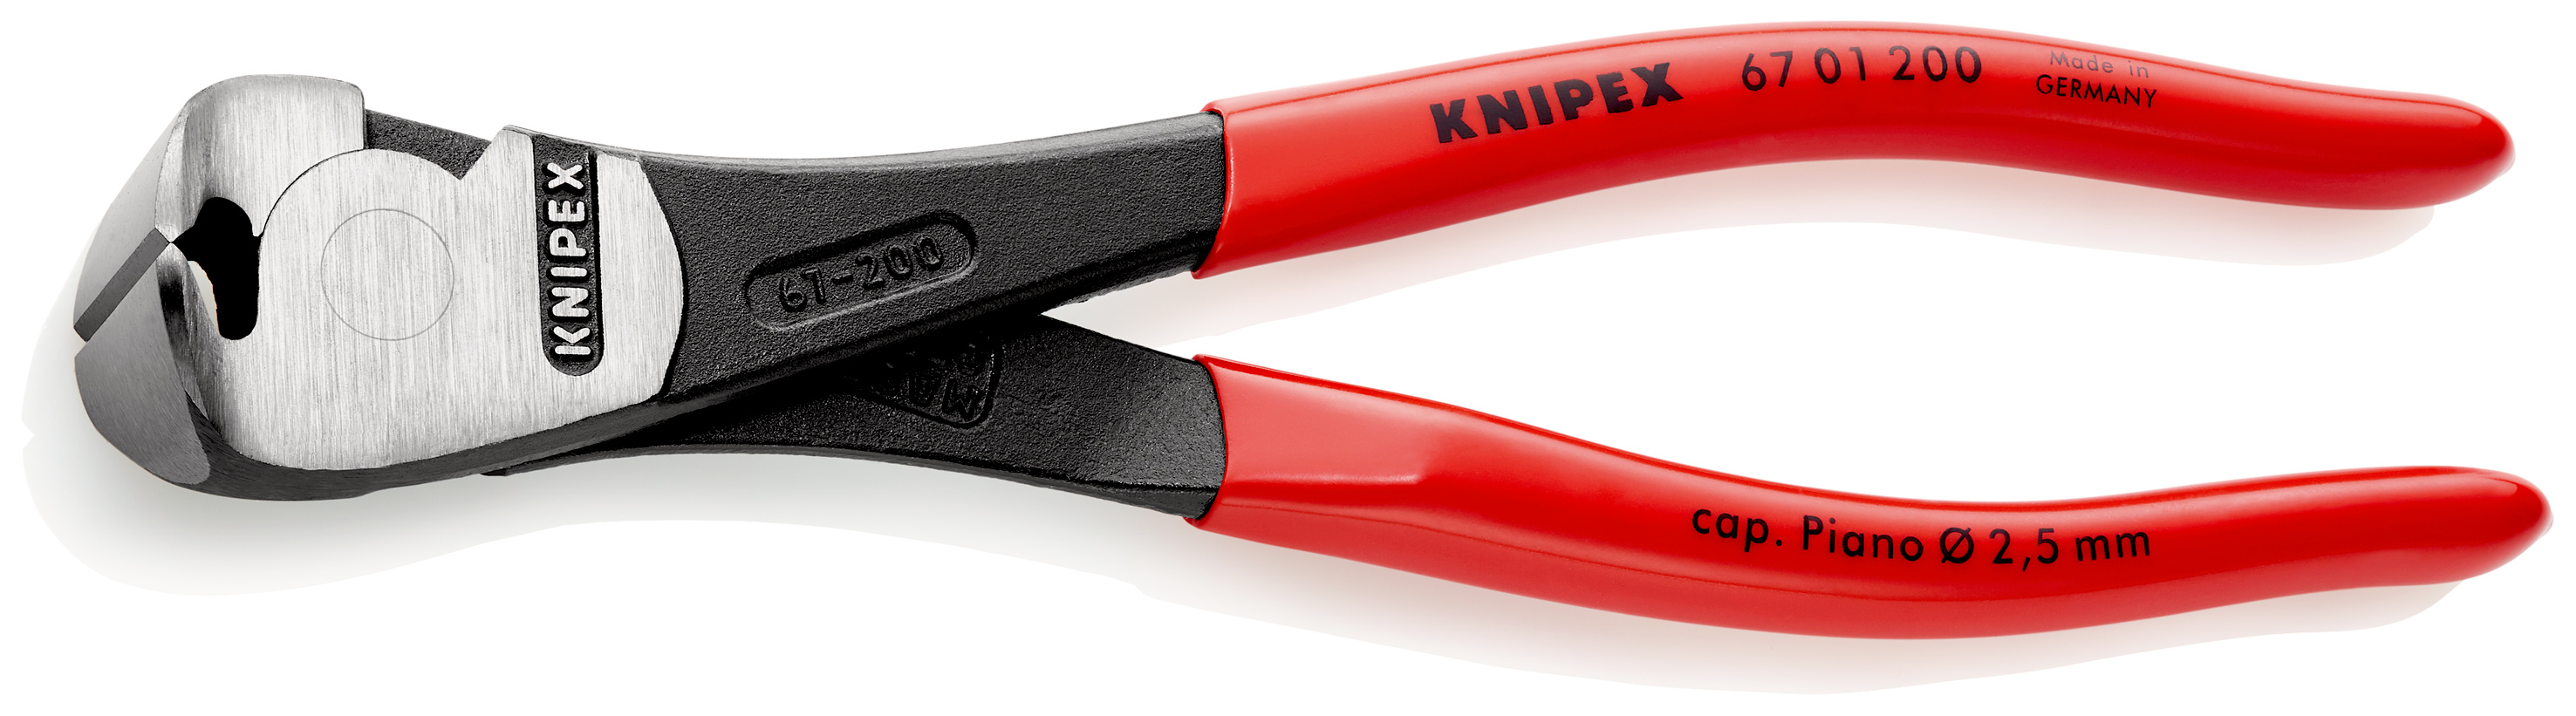 Knipex Kraft-Vornschneider 200 mm 6701200